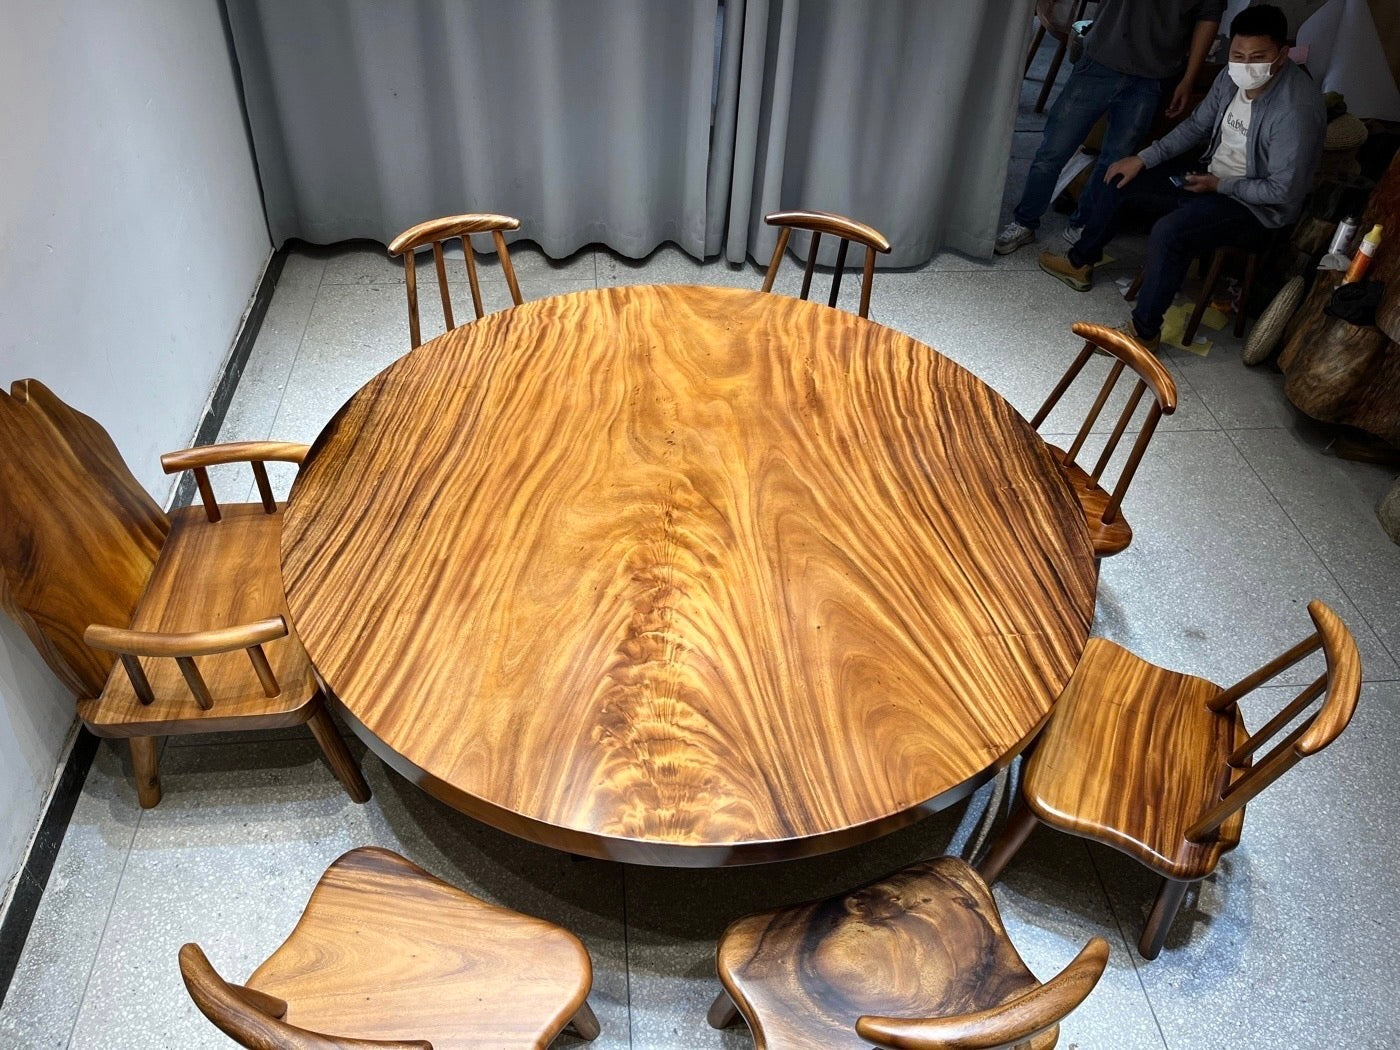 Grande table ronde en bois de 71", table ronde en bois massif, base de table ronde en bois, grande table ronde en bois